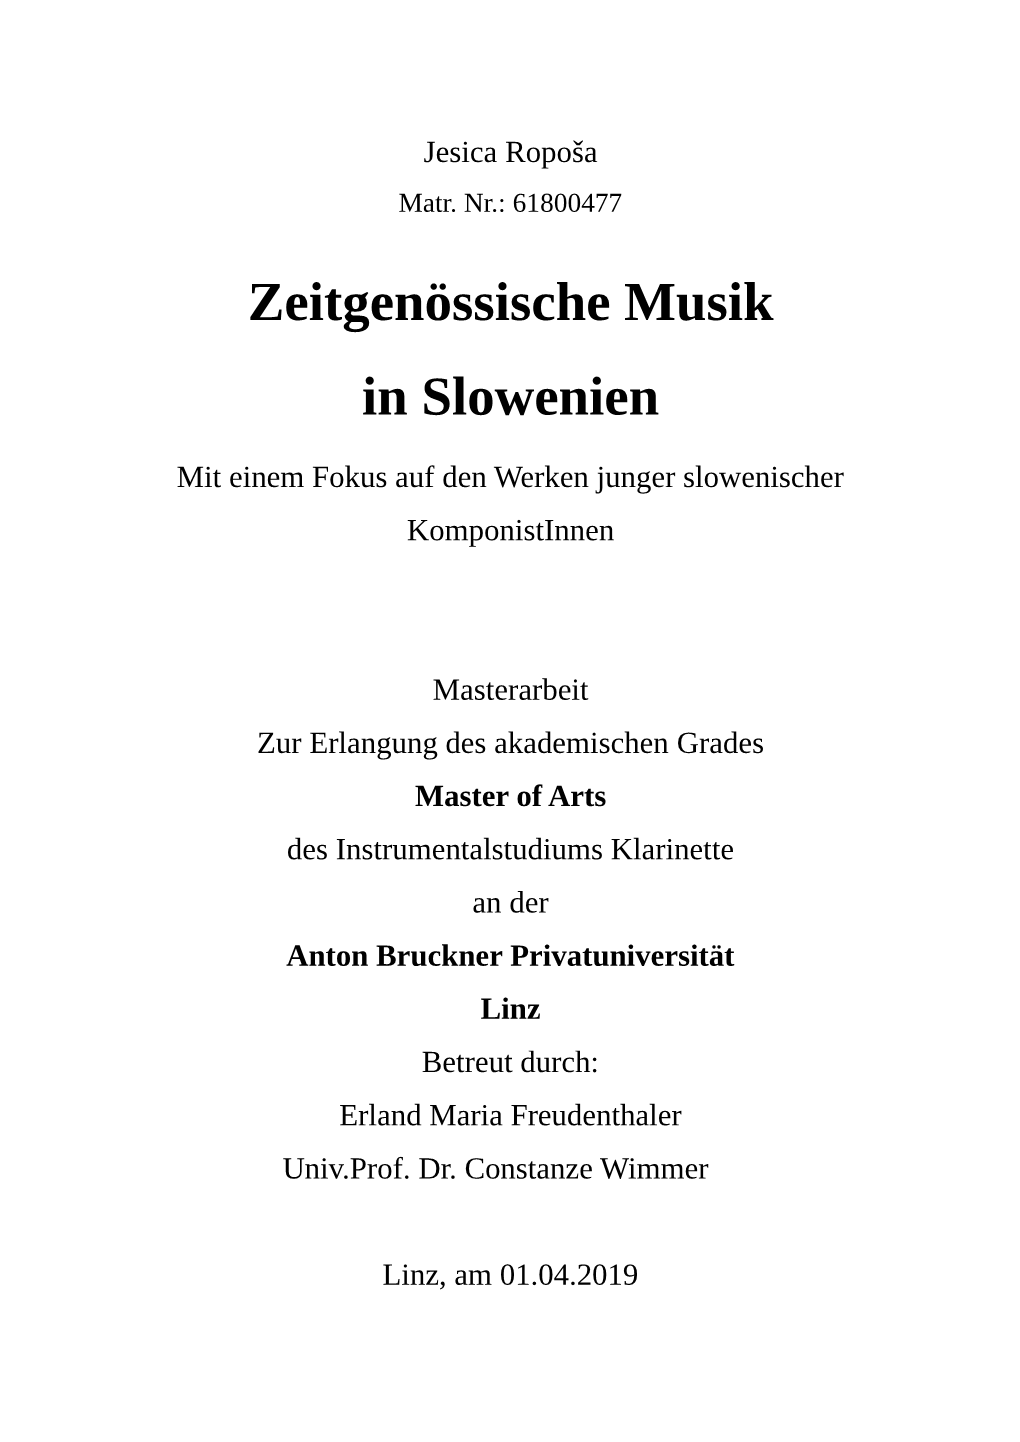 Zeitgenössische Musik in Slowenien